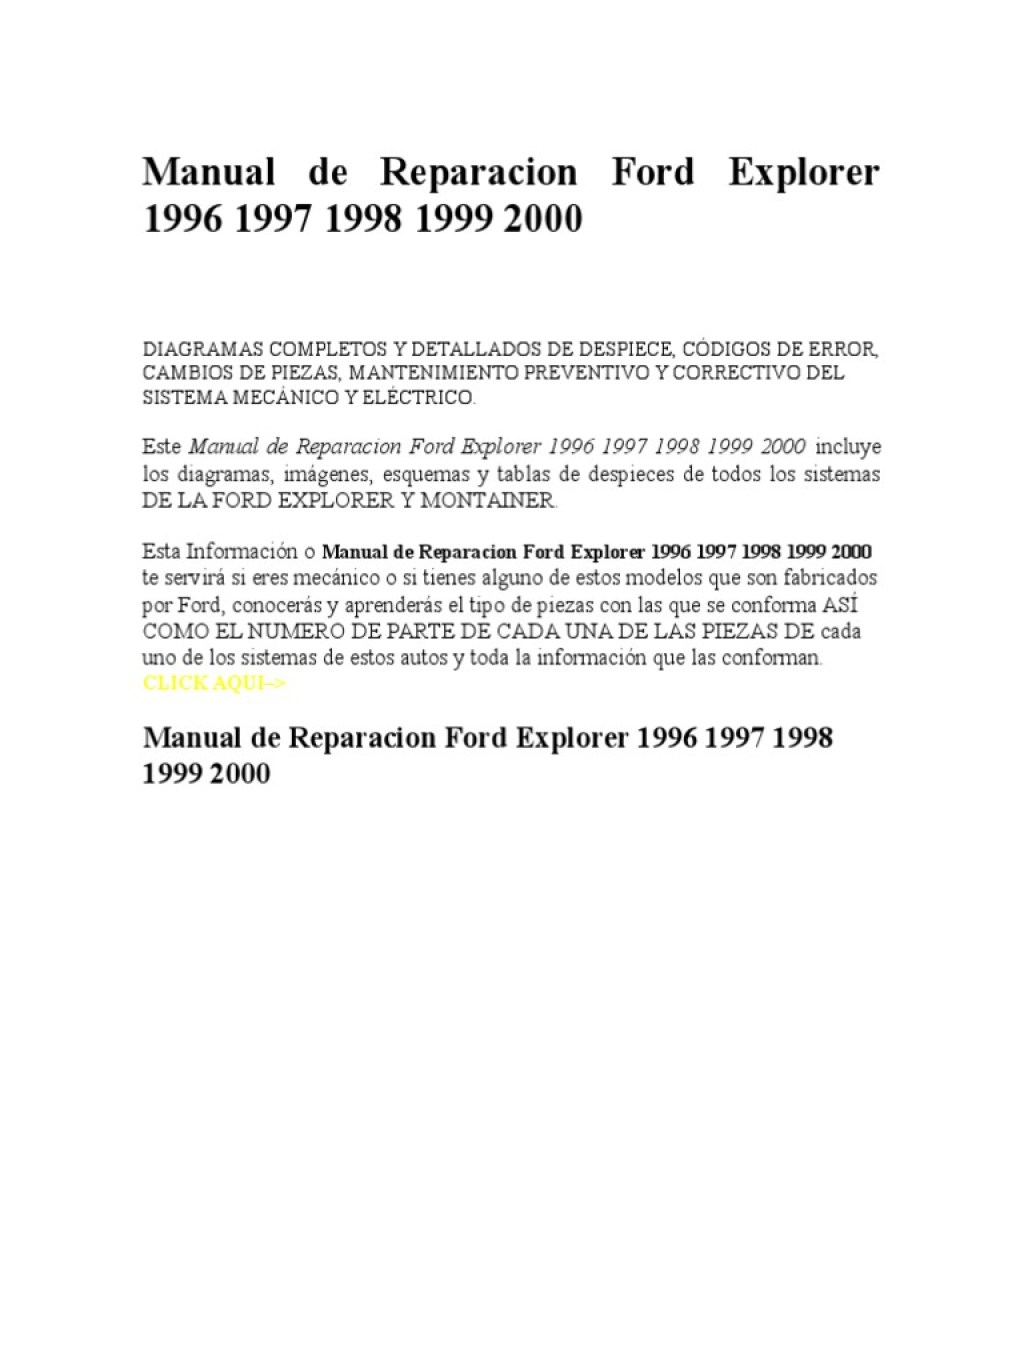 Picture of: Manual de Reparacion Ford Explorer   PDF  Coche  Eje